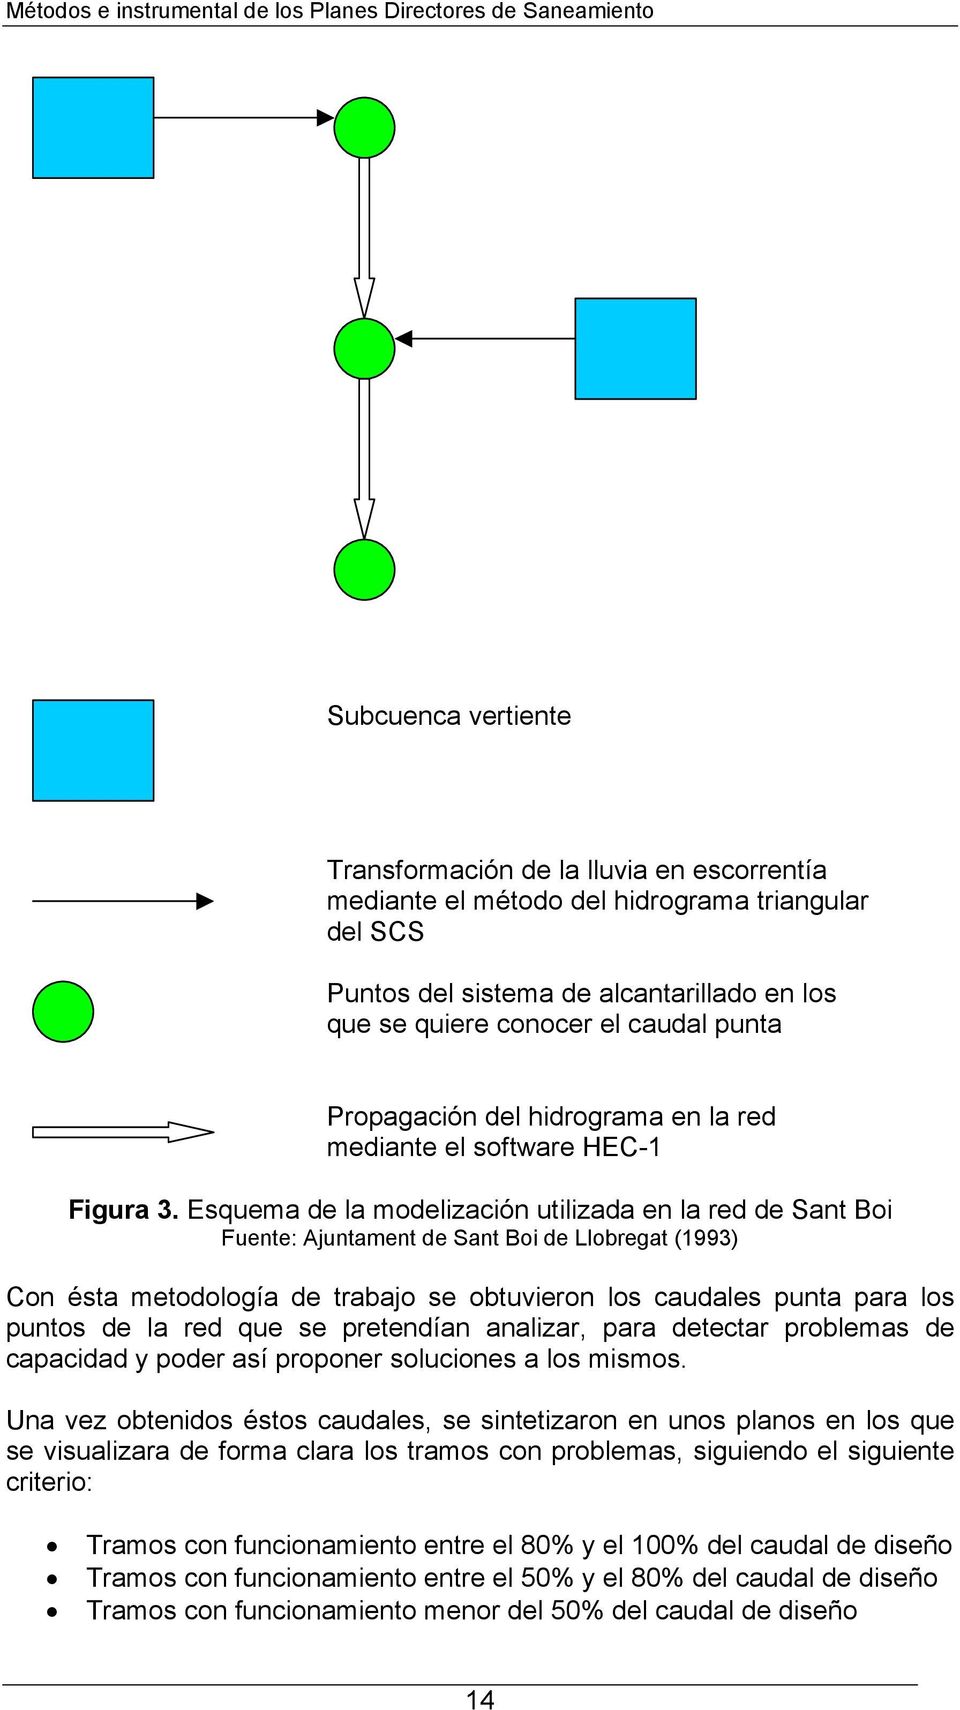 Esquema de la modelización utilizada en la red de Sant Boi Fuente: Ajuntament de Sant Boi de Llobregat (1993) Con ésta metodología de trabajo se obtuvieron los caudales punta para los puntos de la